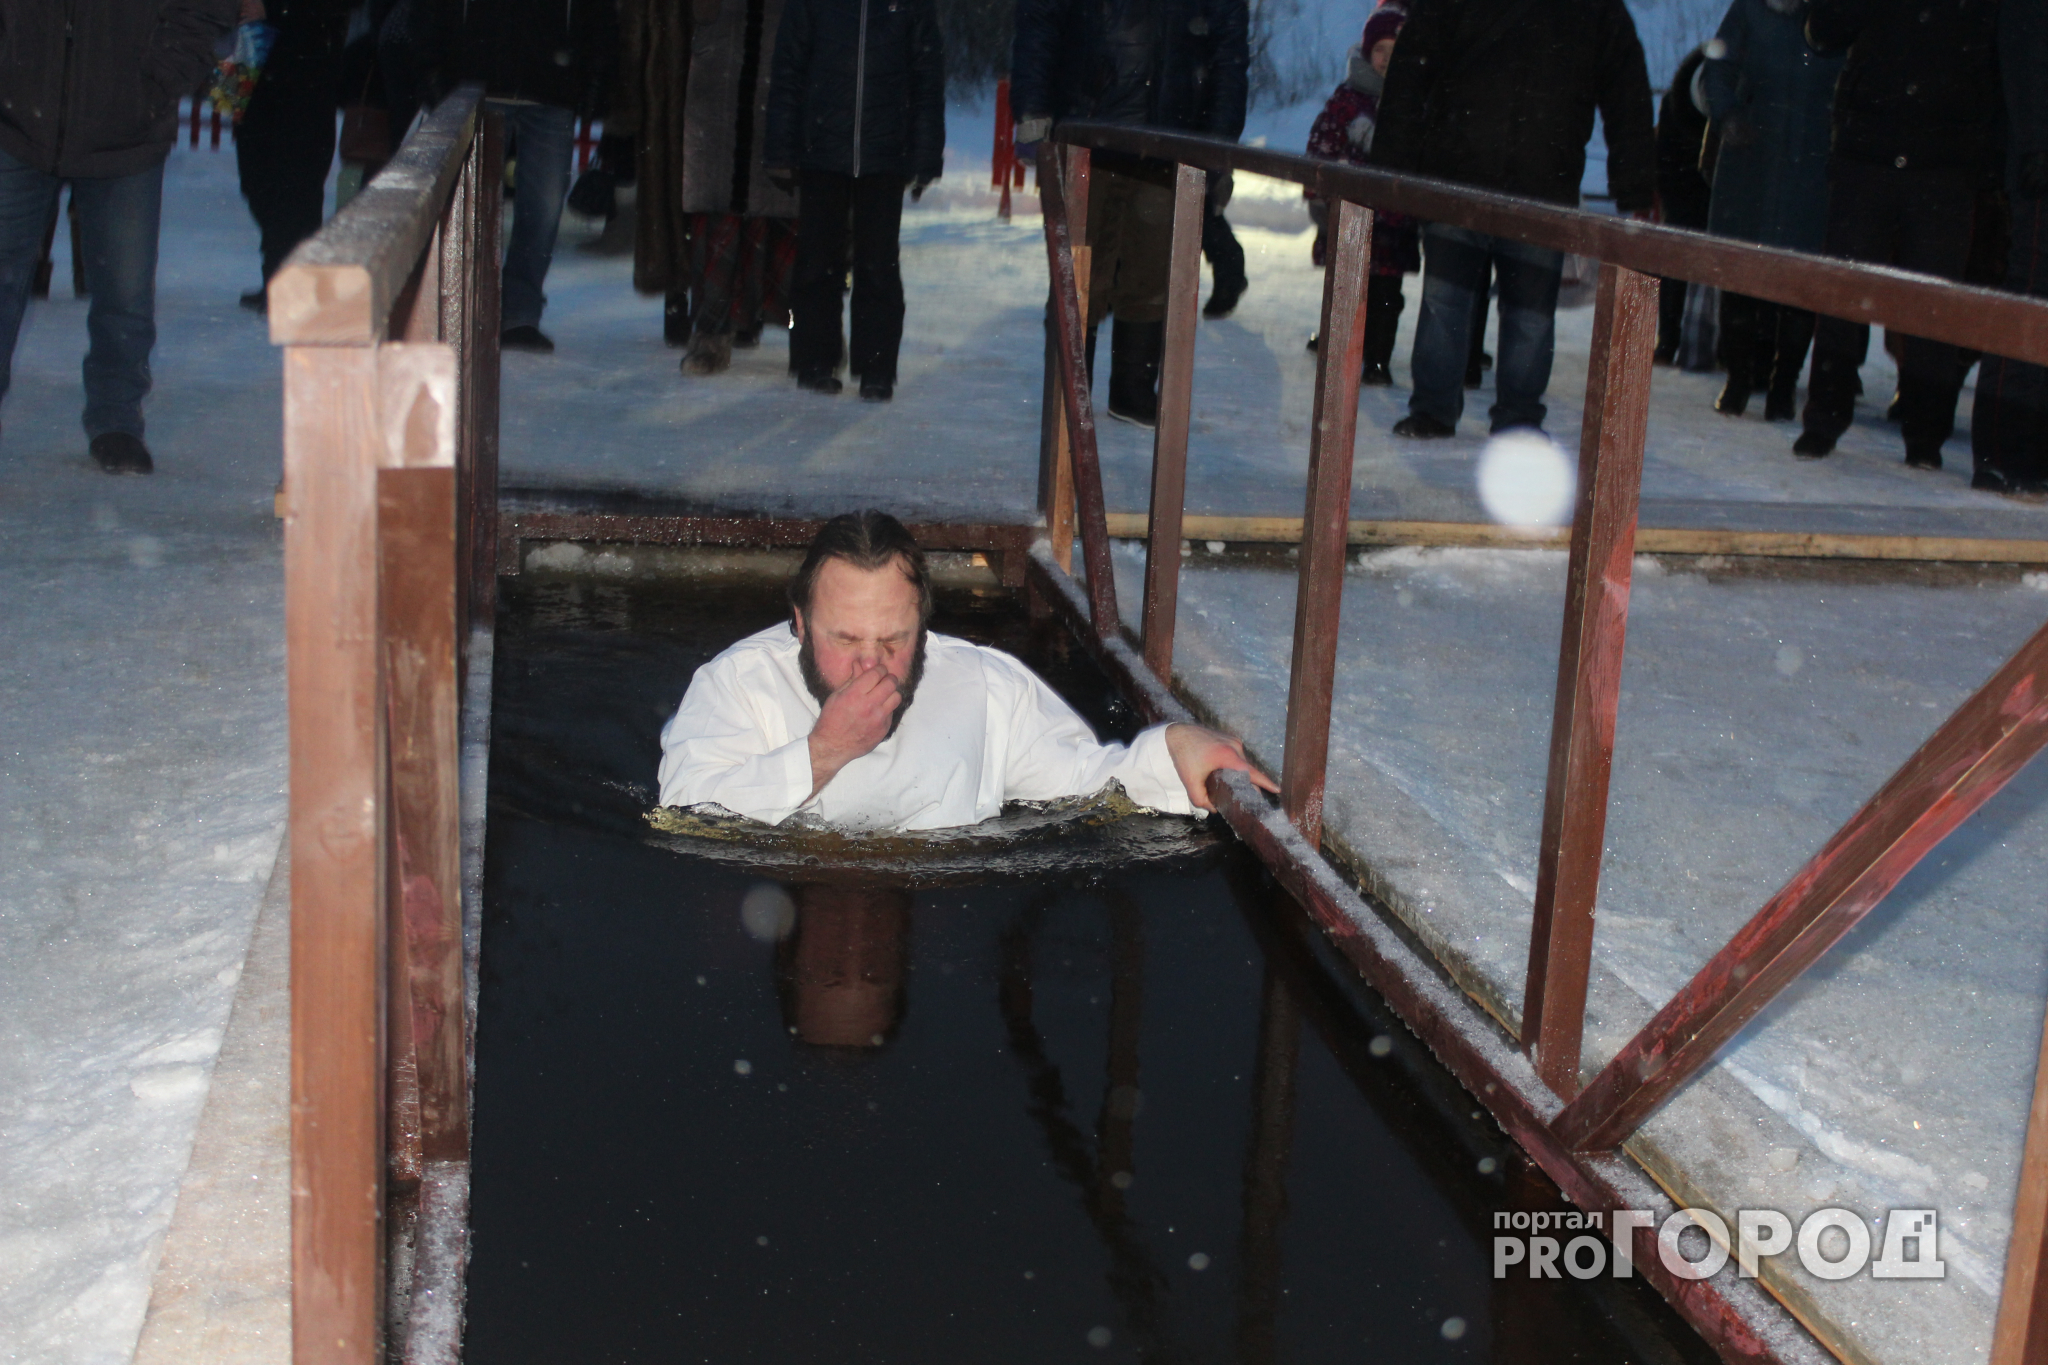 Фоторепортаж с первой проруби в Сыктывкаре: люди окунались в купель с ледяным спокойствием